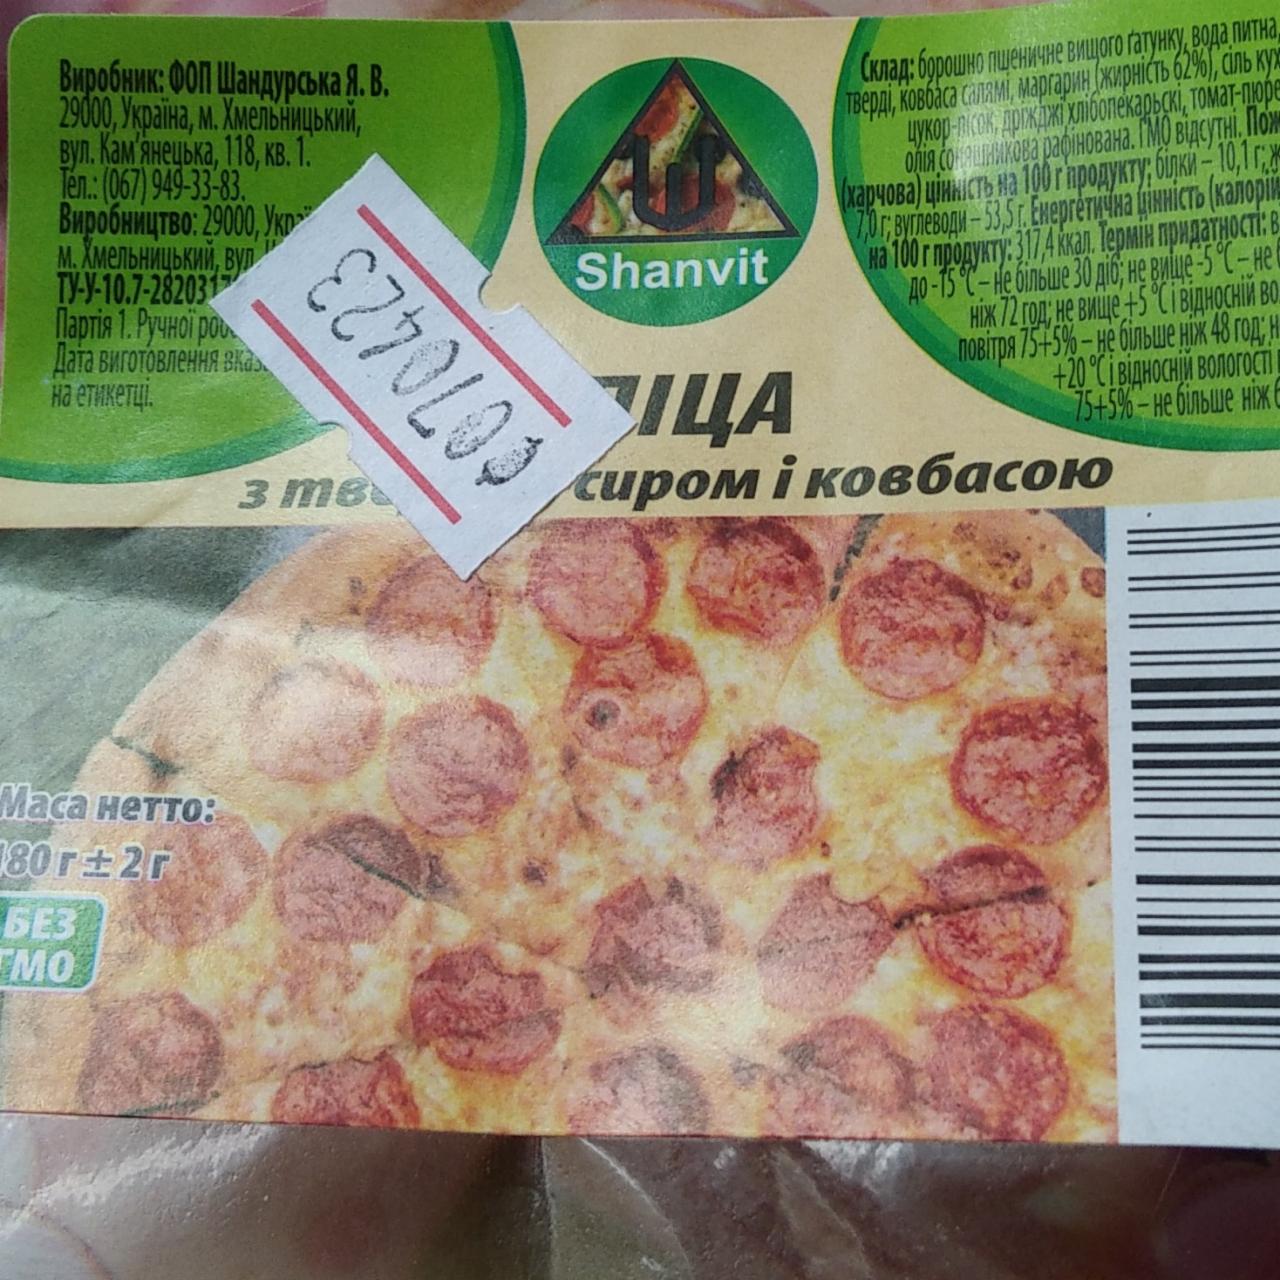 Фото - Пицца с сыром и колбасой Shanvit